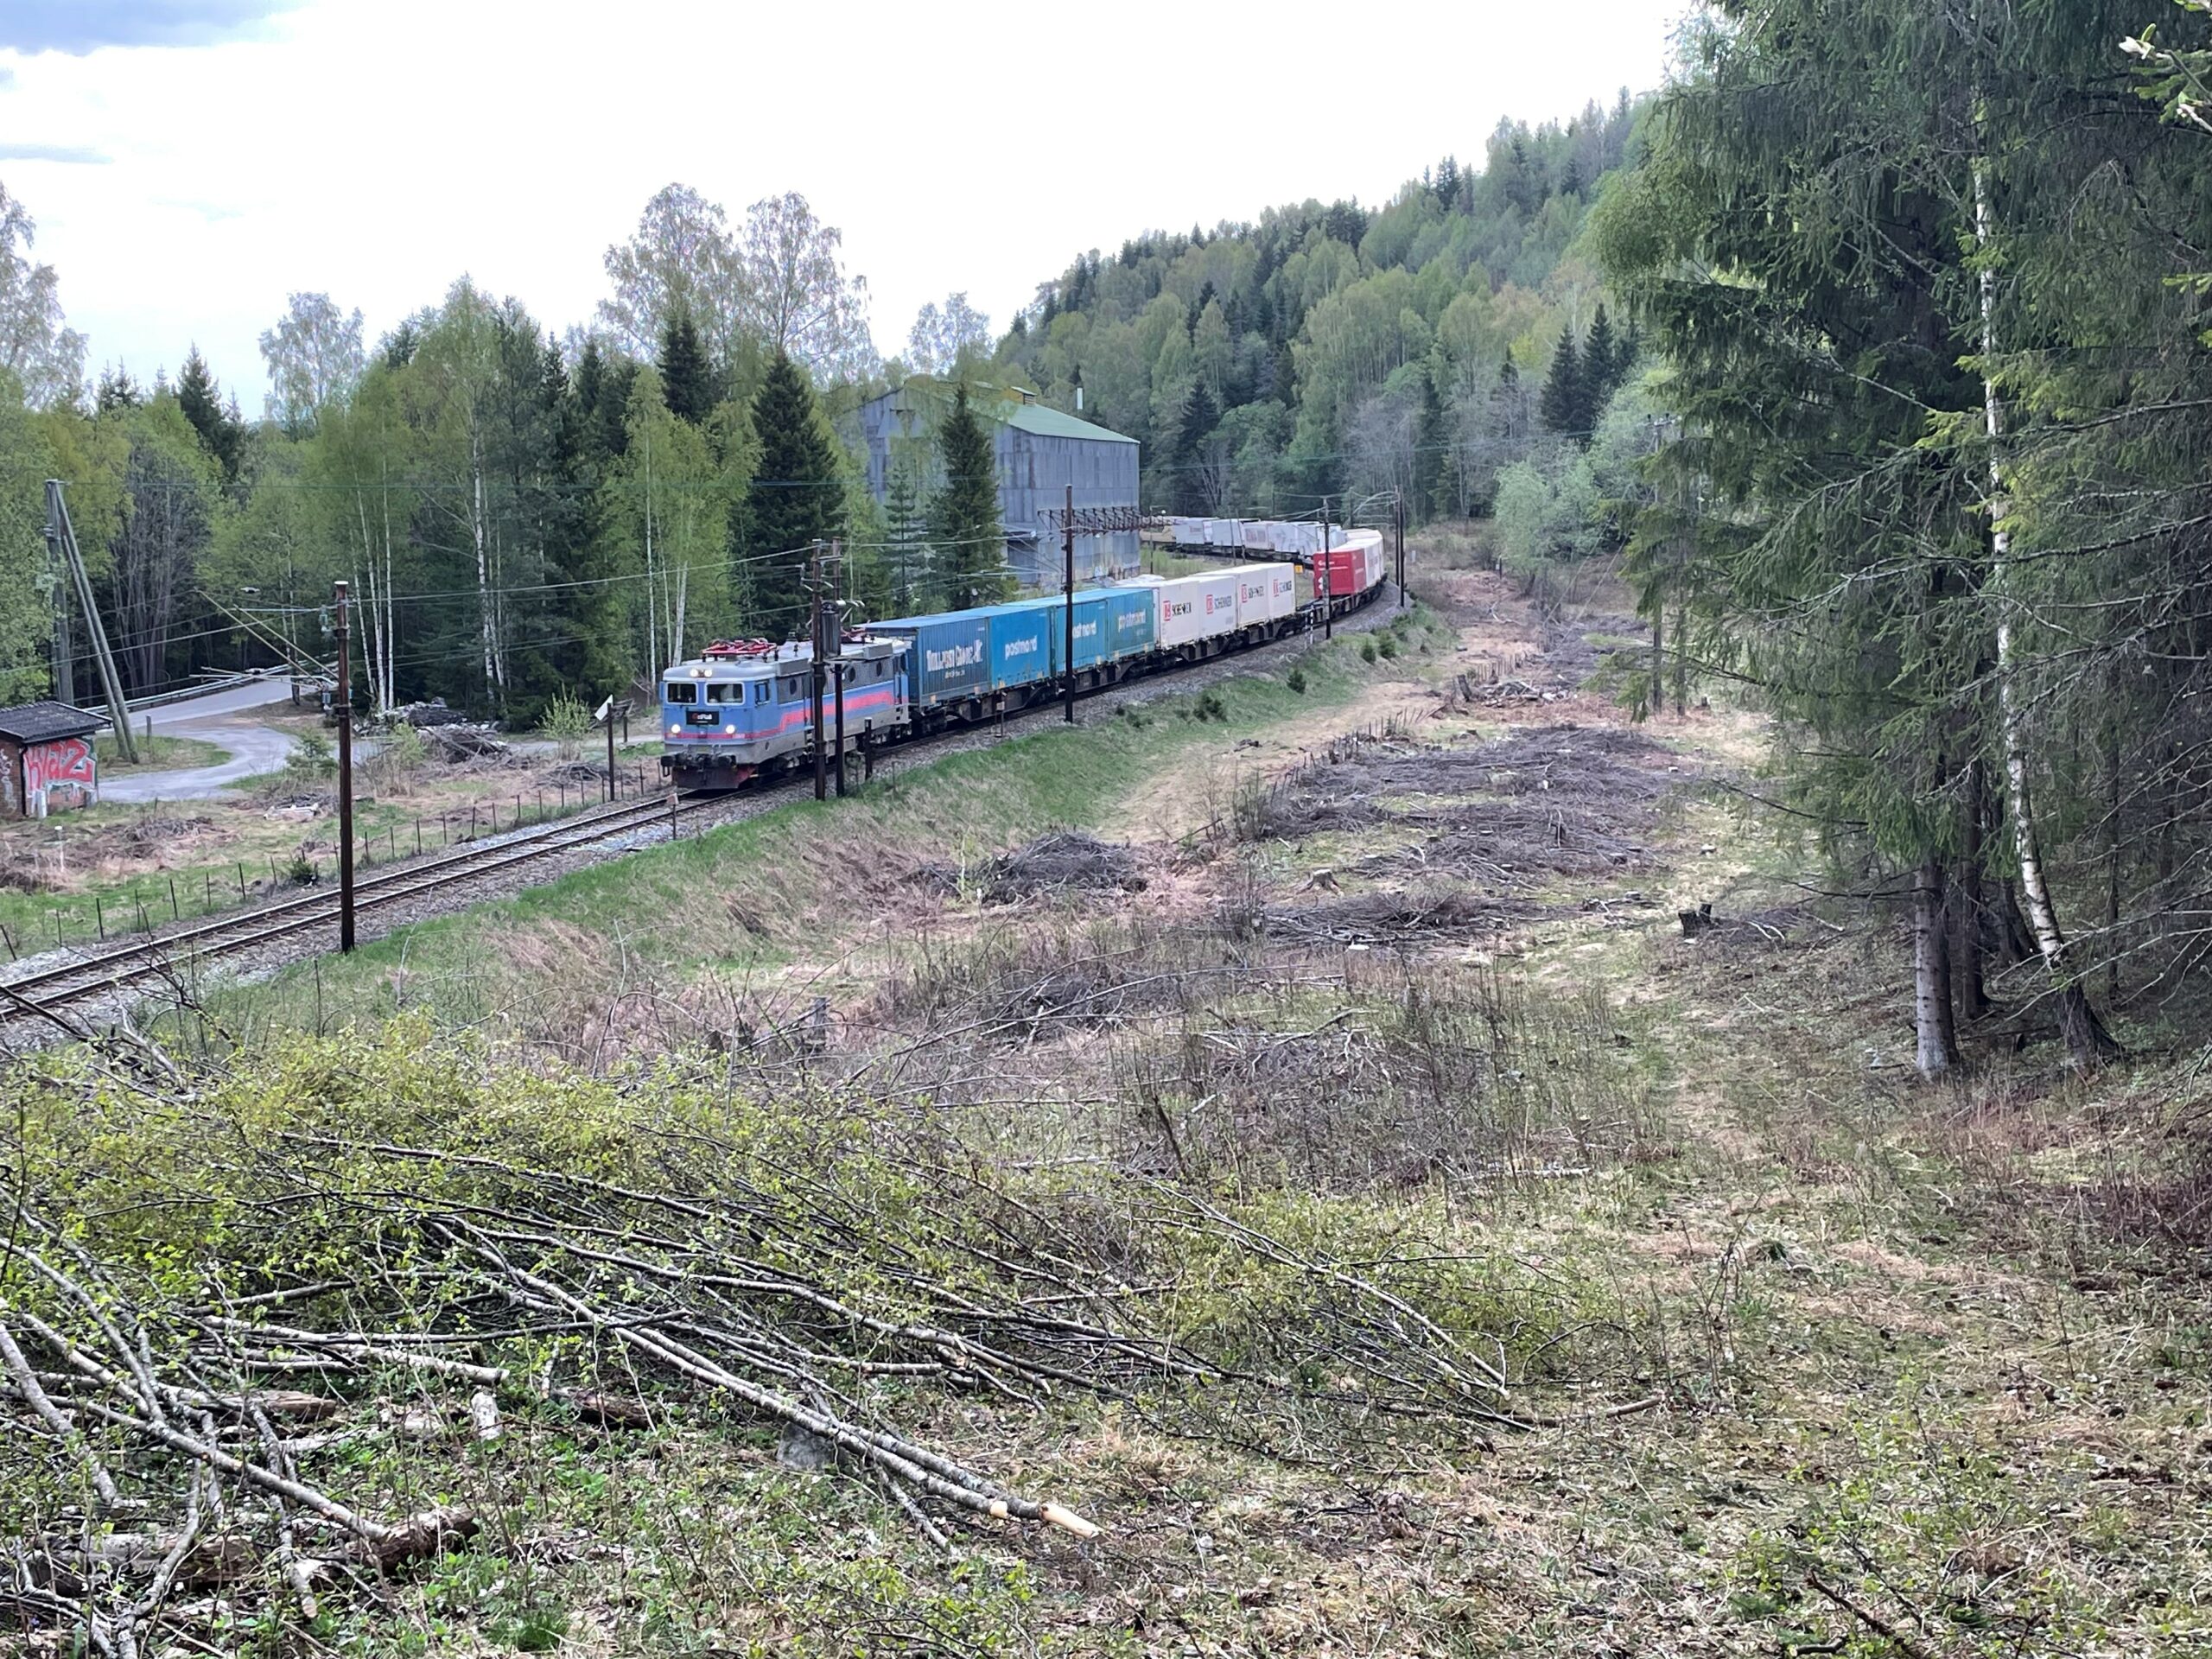 Onrail godstog mot Bergen ved Viul på Roa - Hønefossbanen.